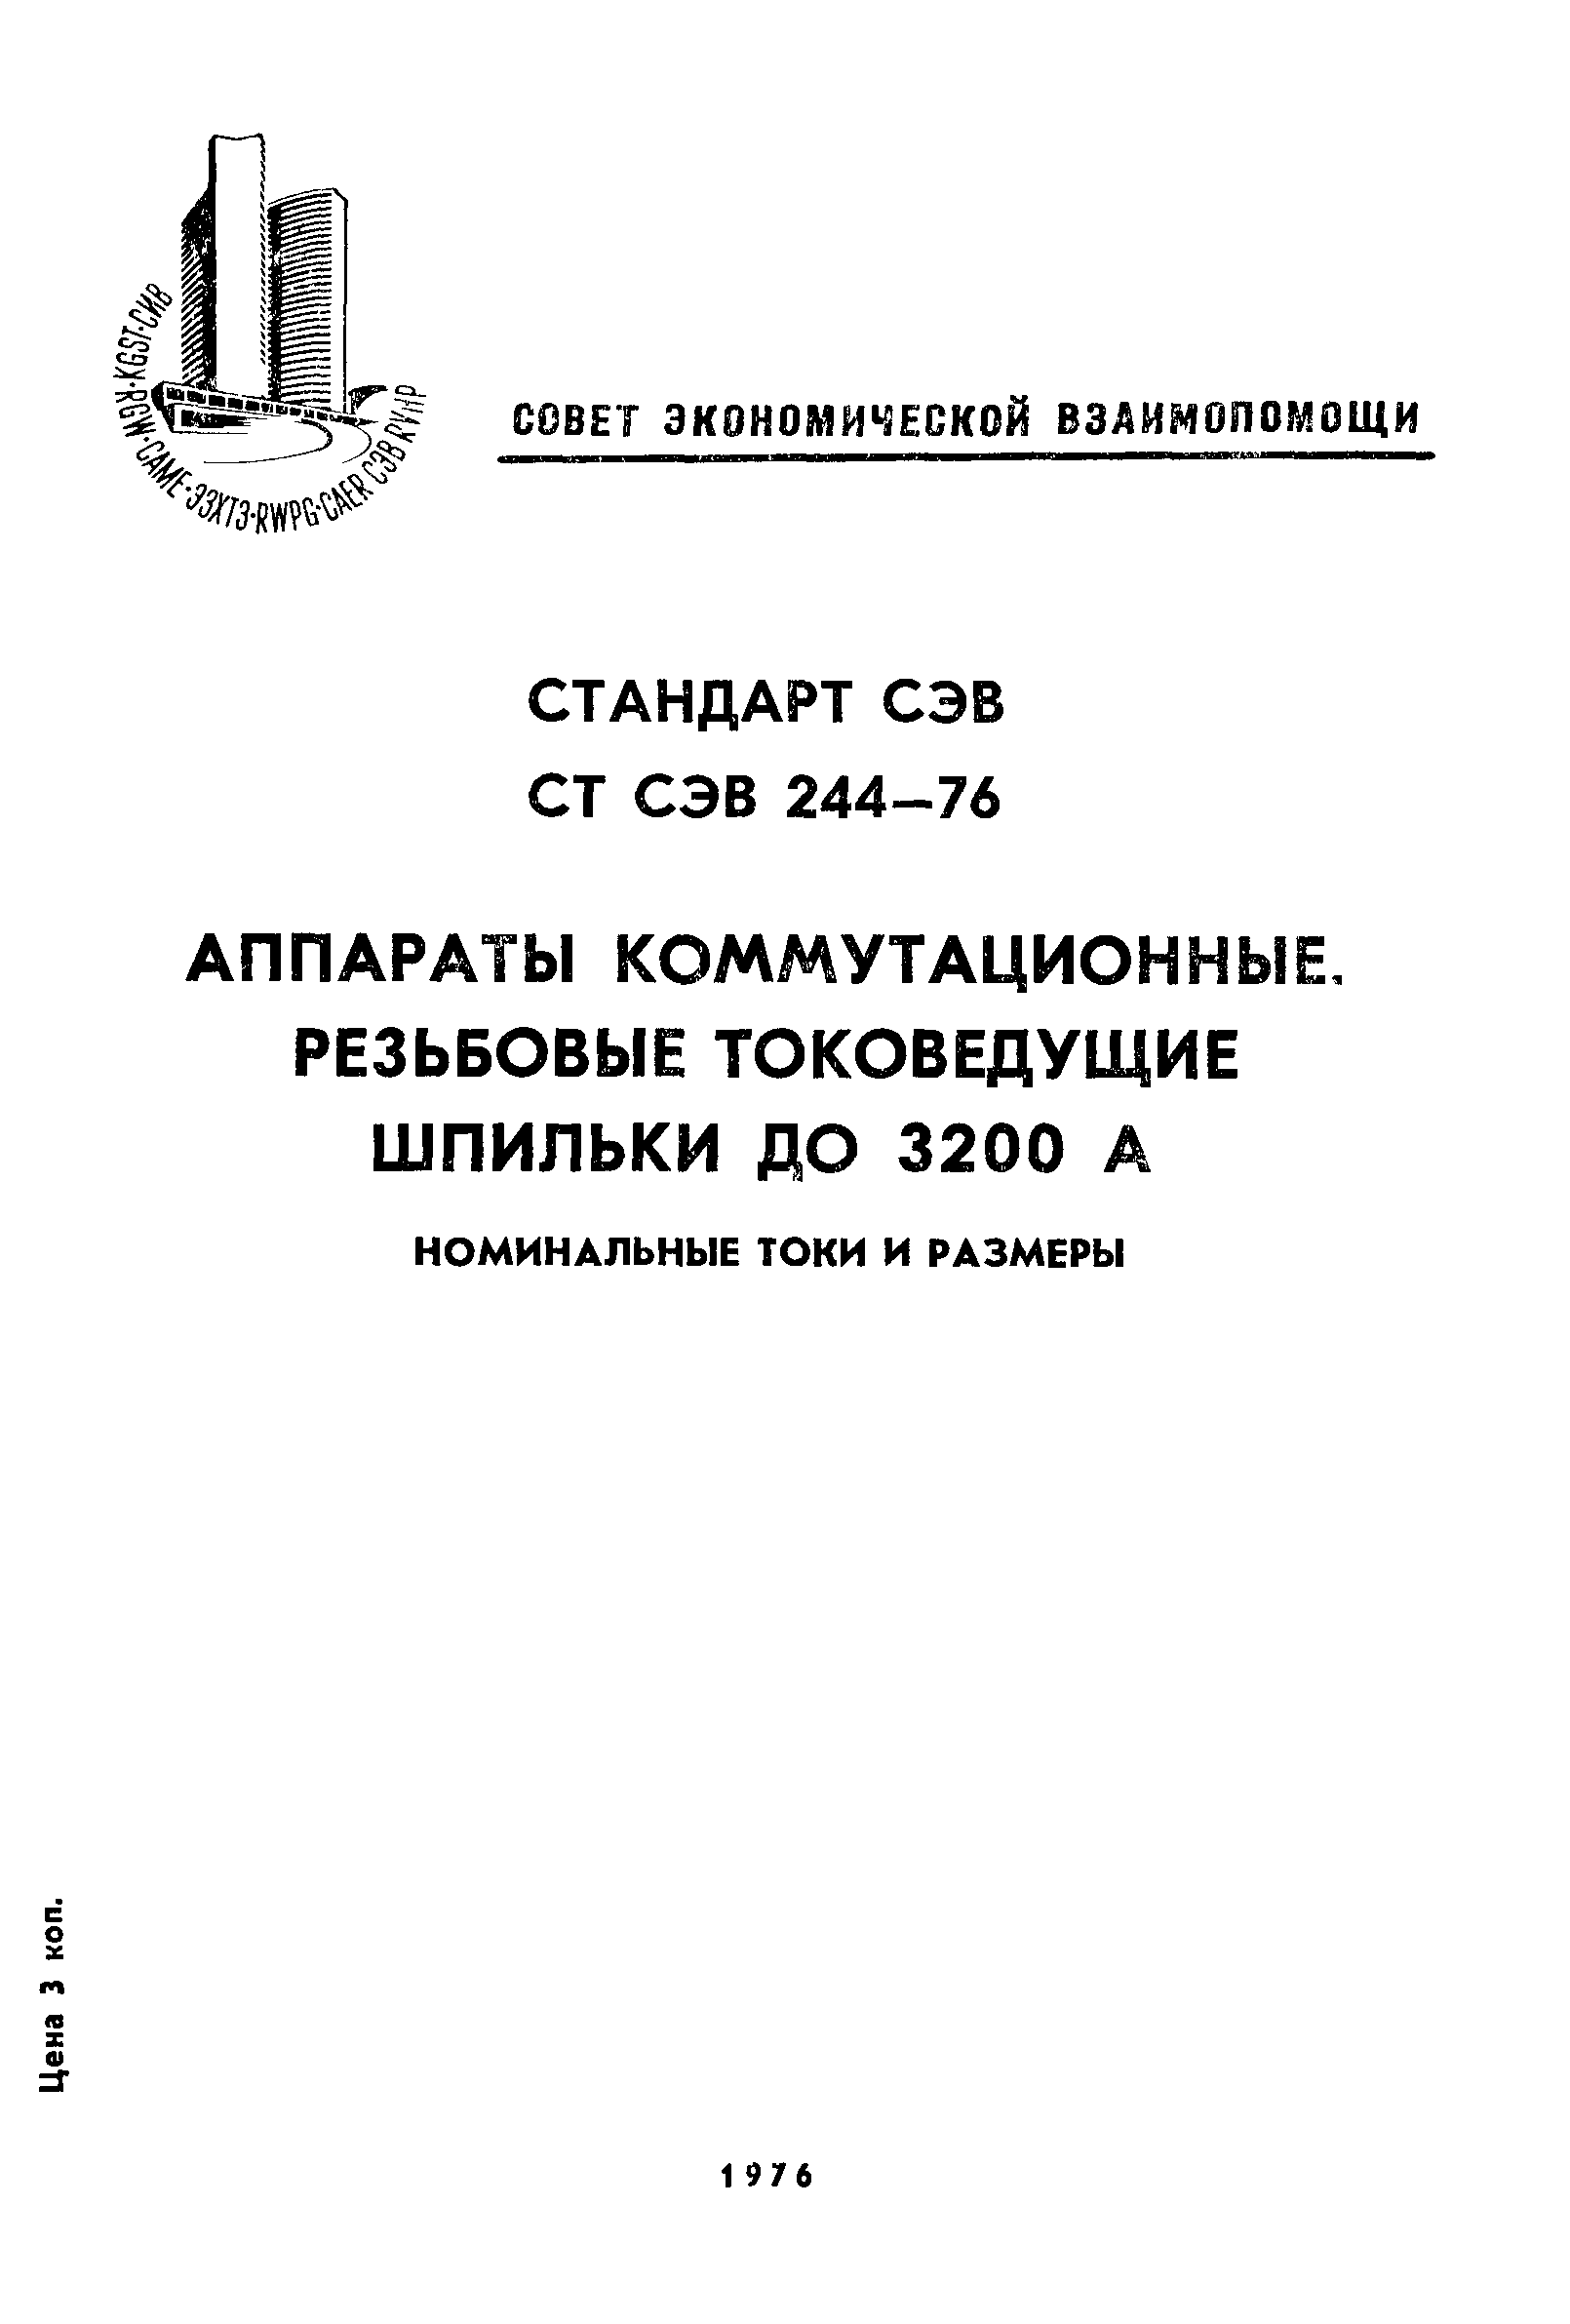 СТ СЭВ 244-76